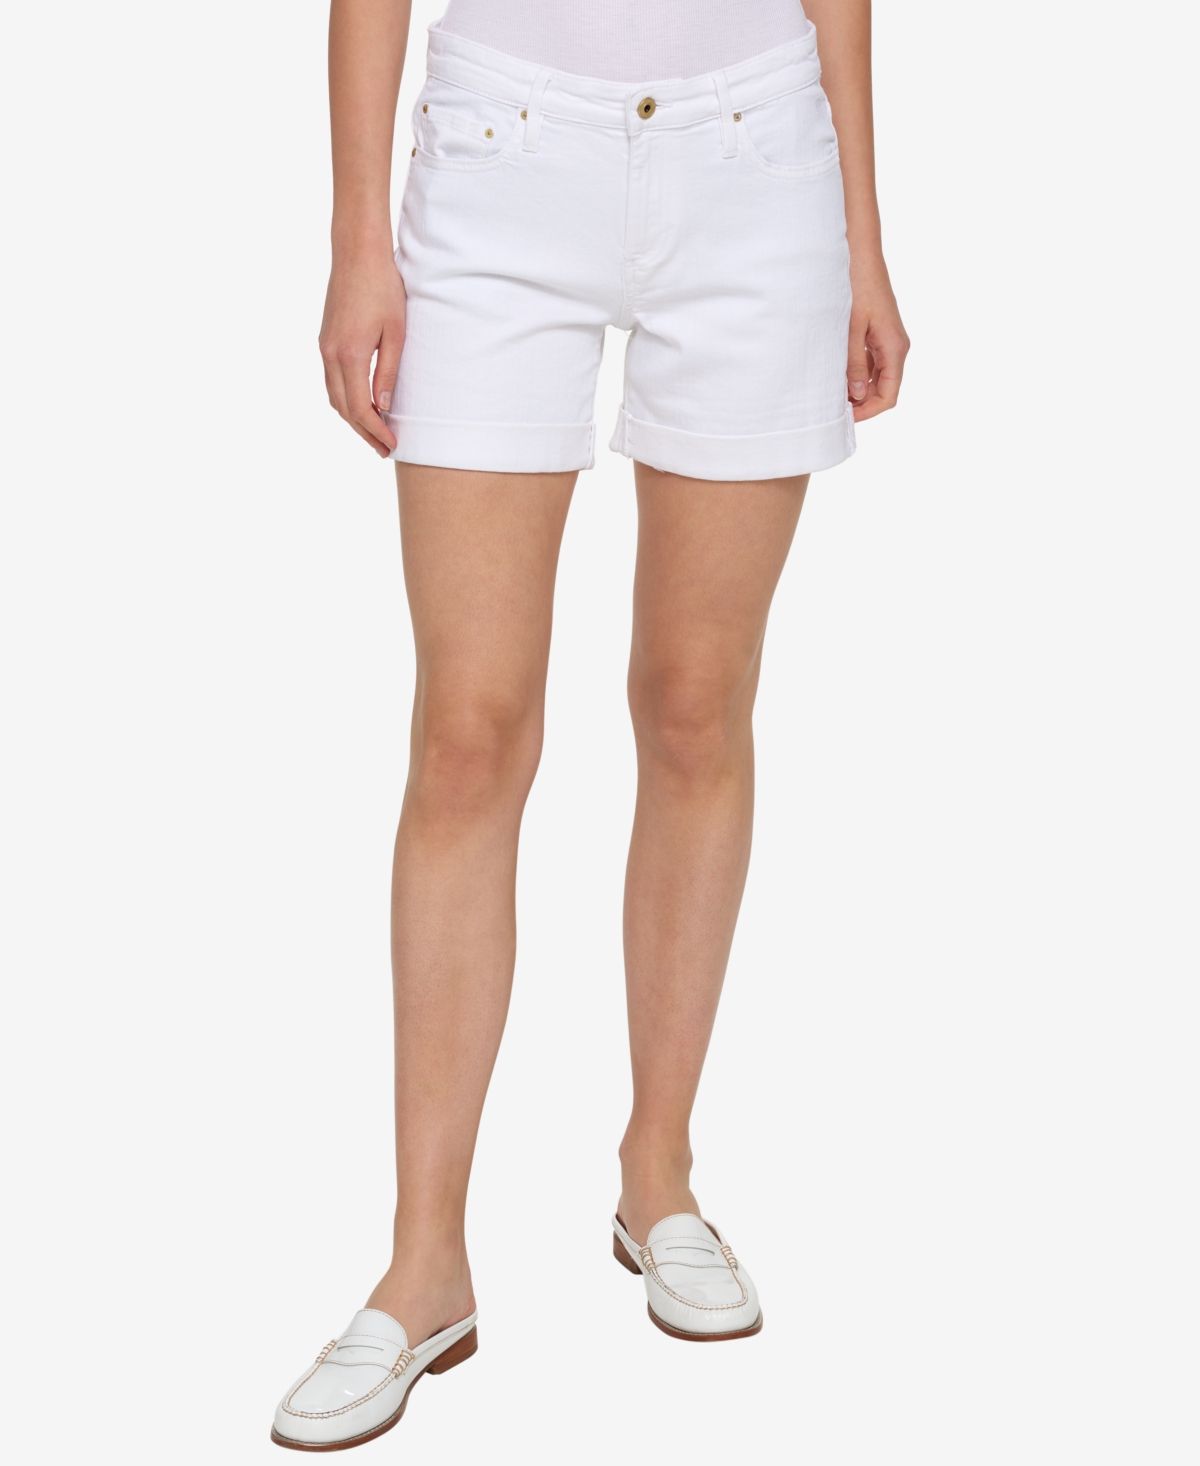 Tommy Hilfiger Women's Th Flex Cuffed Denim Shorts